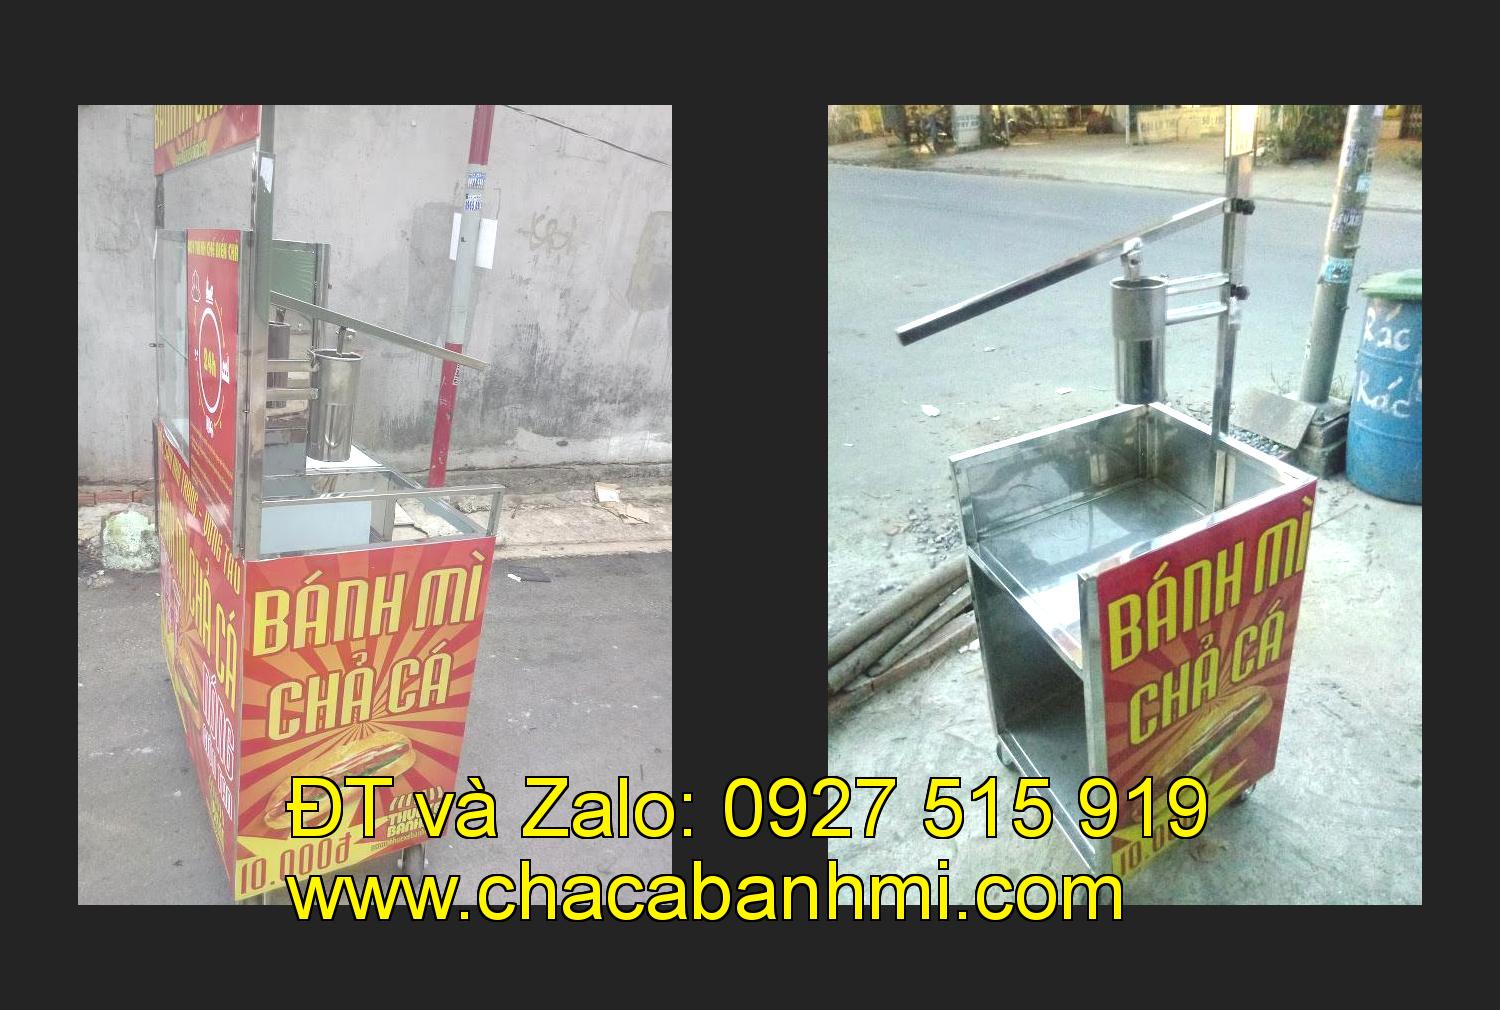 Bán xe bánh mì chả cá tại tỉnh Nam Định